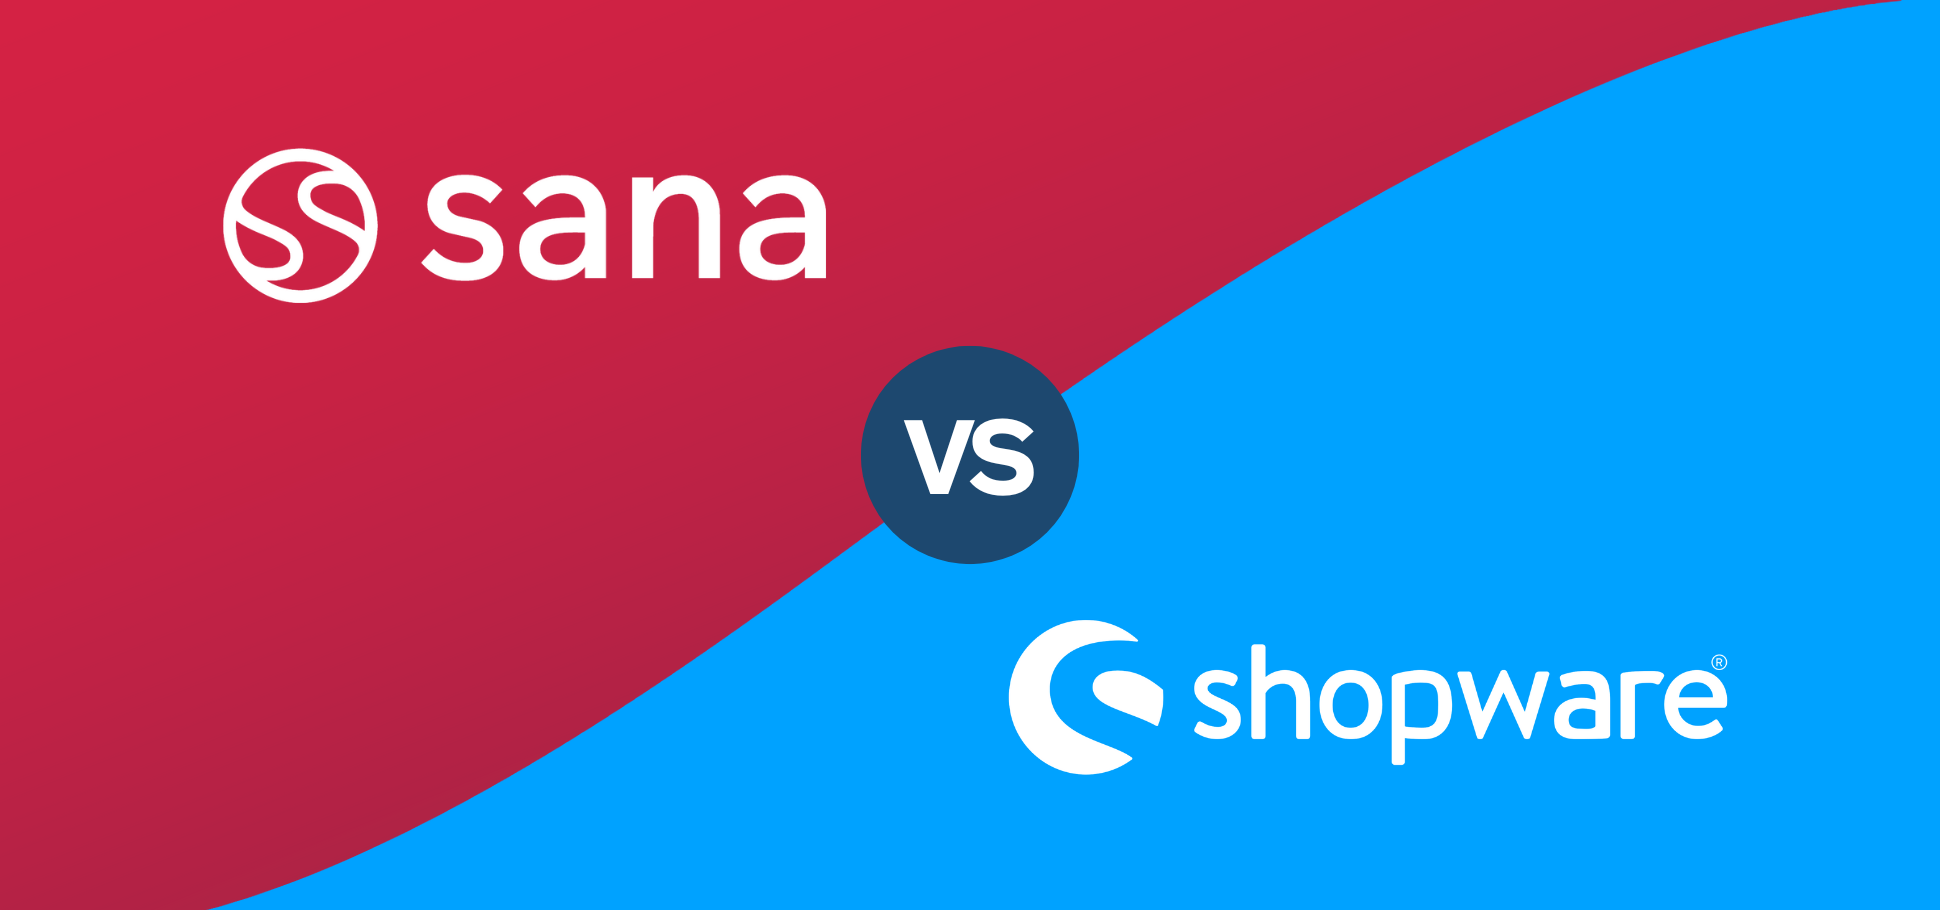 Sana Commerce vs Shopware Comparison Article Header Image